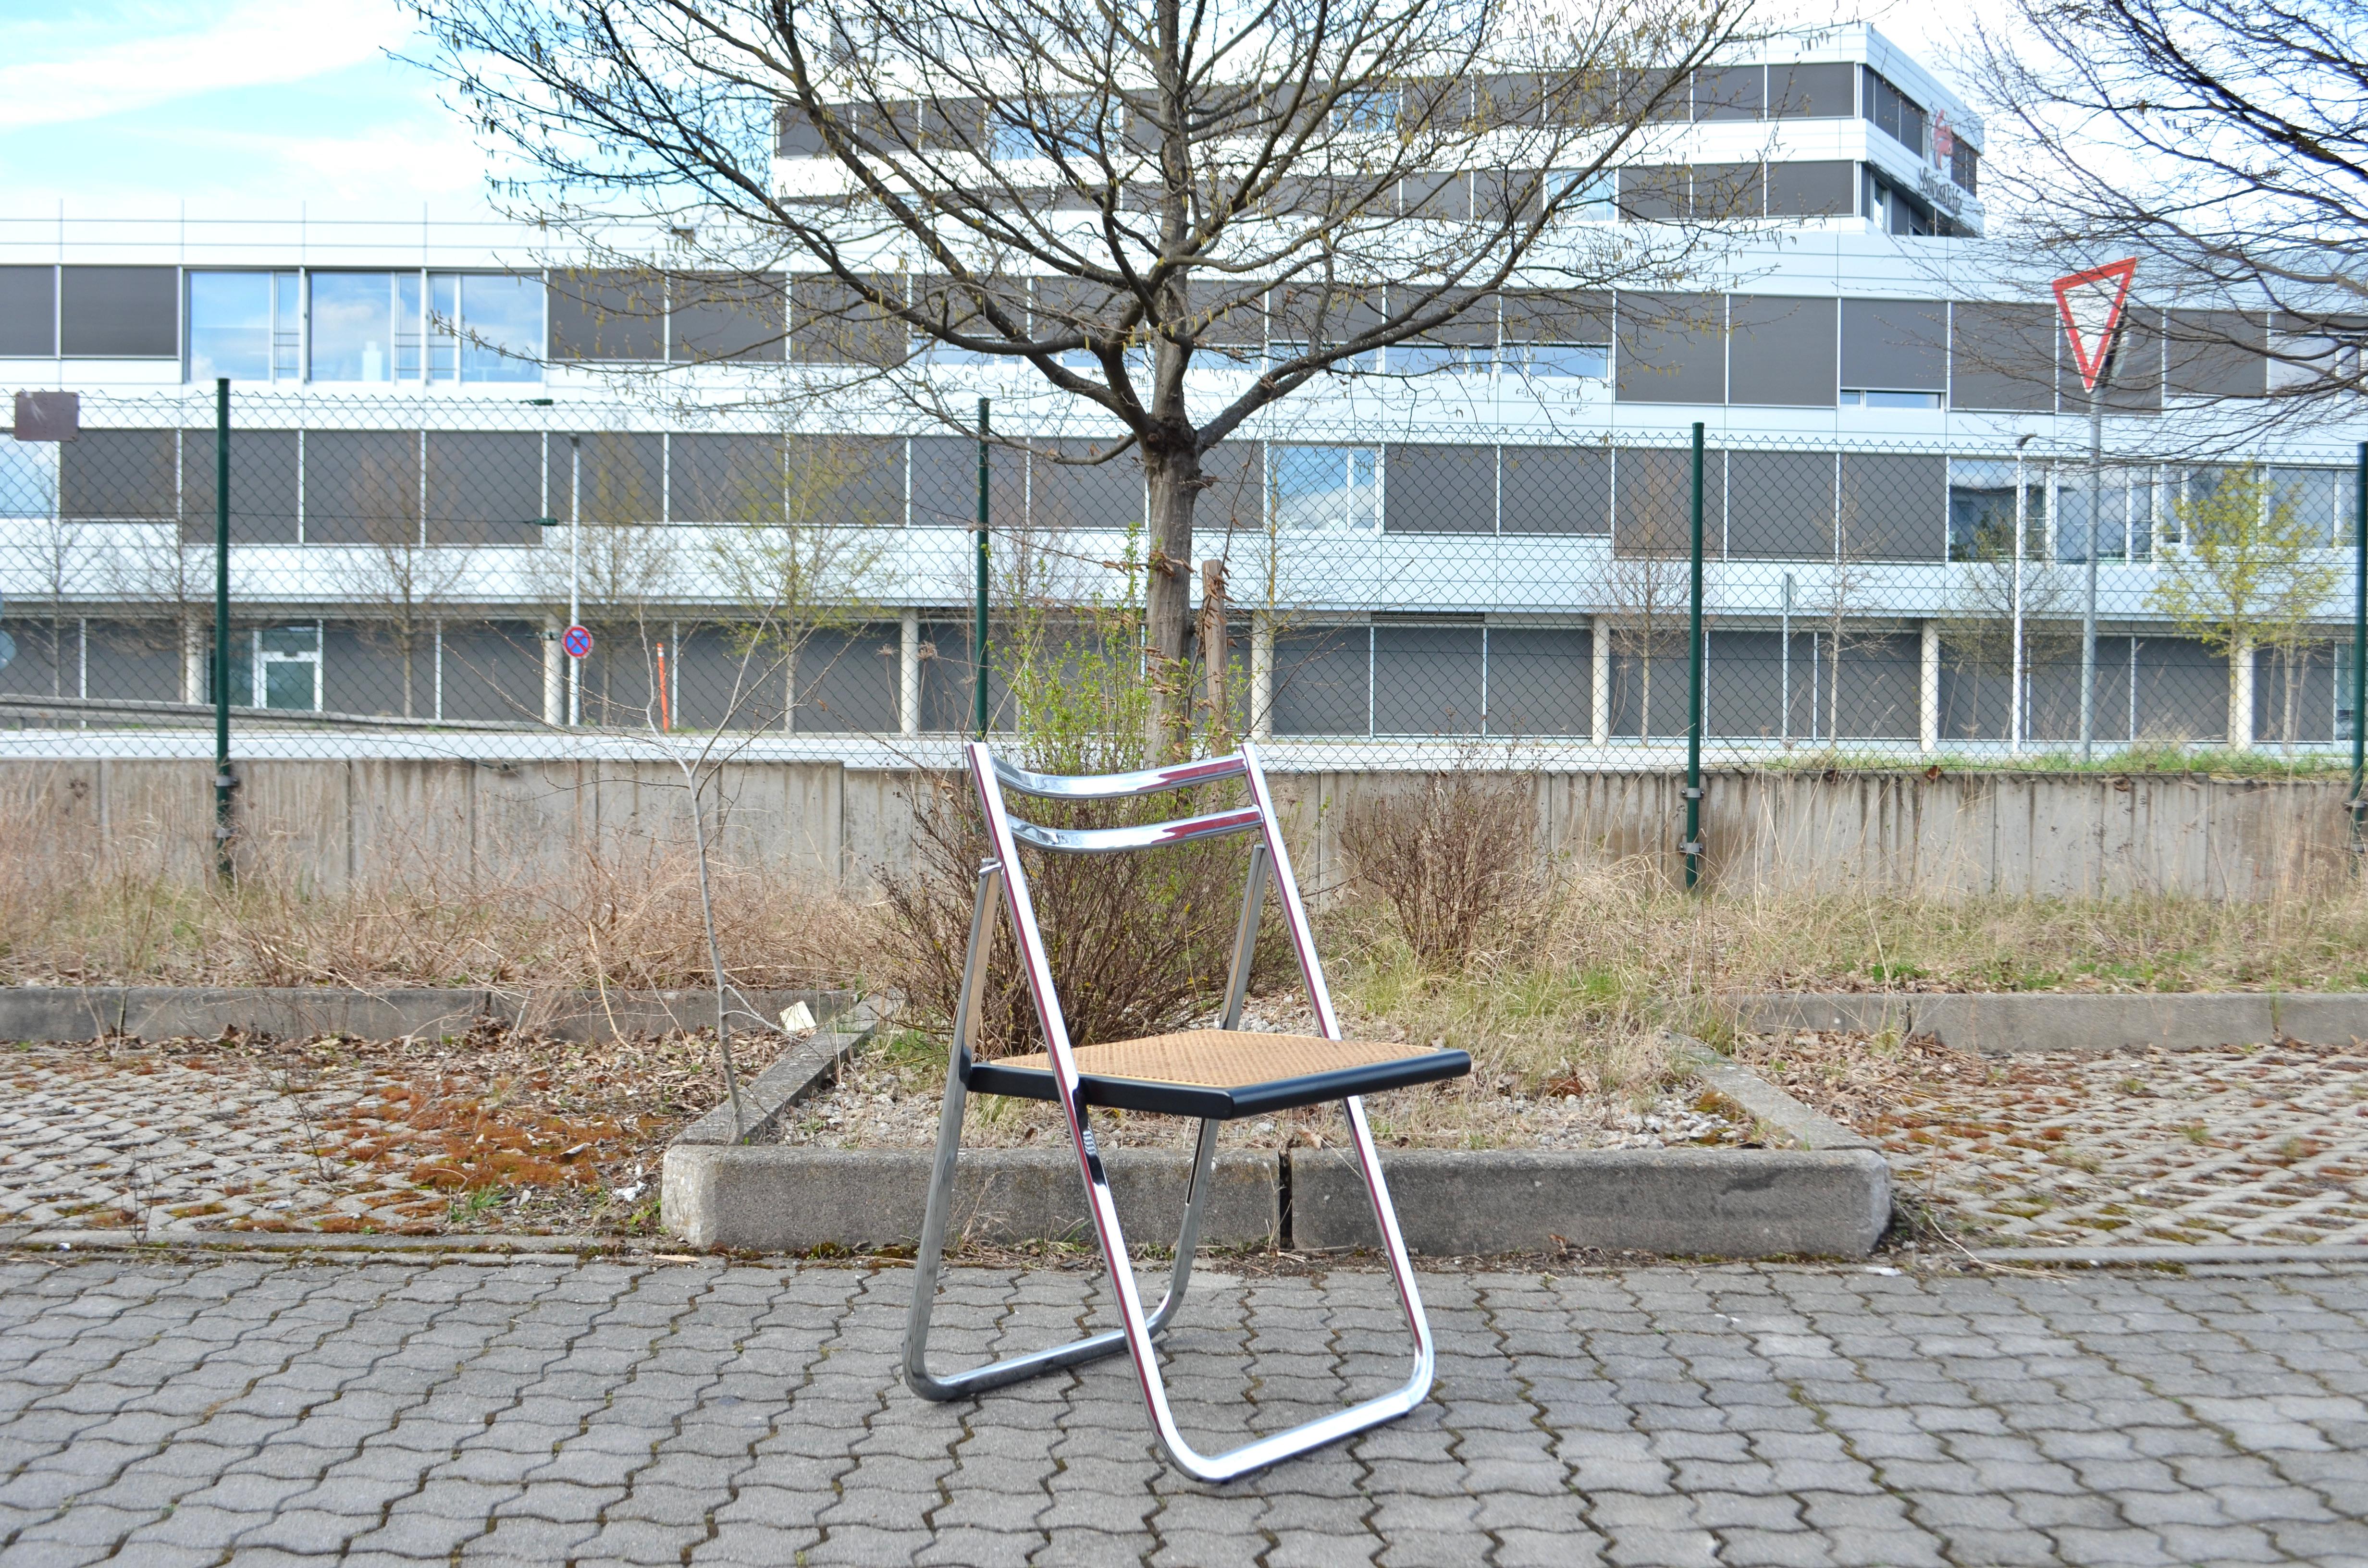 Cette chaise pliante italienne a été fabriquée par Arrben en Italie.
L'assise est en cannage et la structure en hêtre laqué noir.
Le cadre Foldes est en acier et chromé.
La chaise et la canne sont en très bon état.
Il n'a pas été utilisé